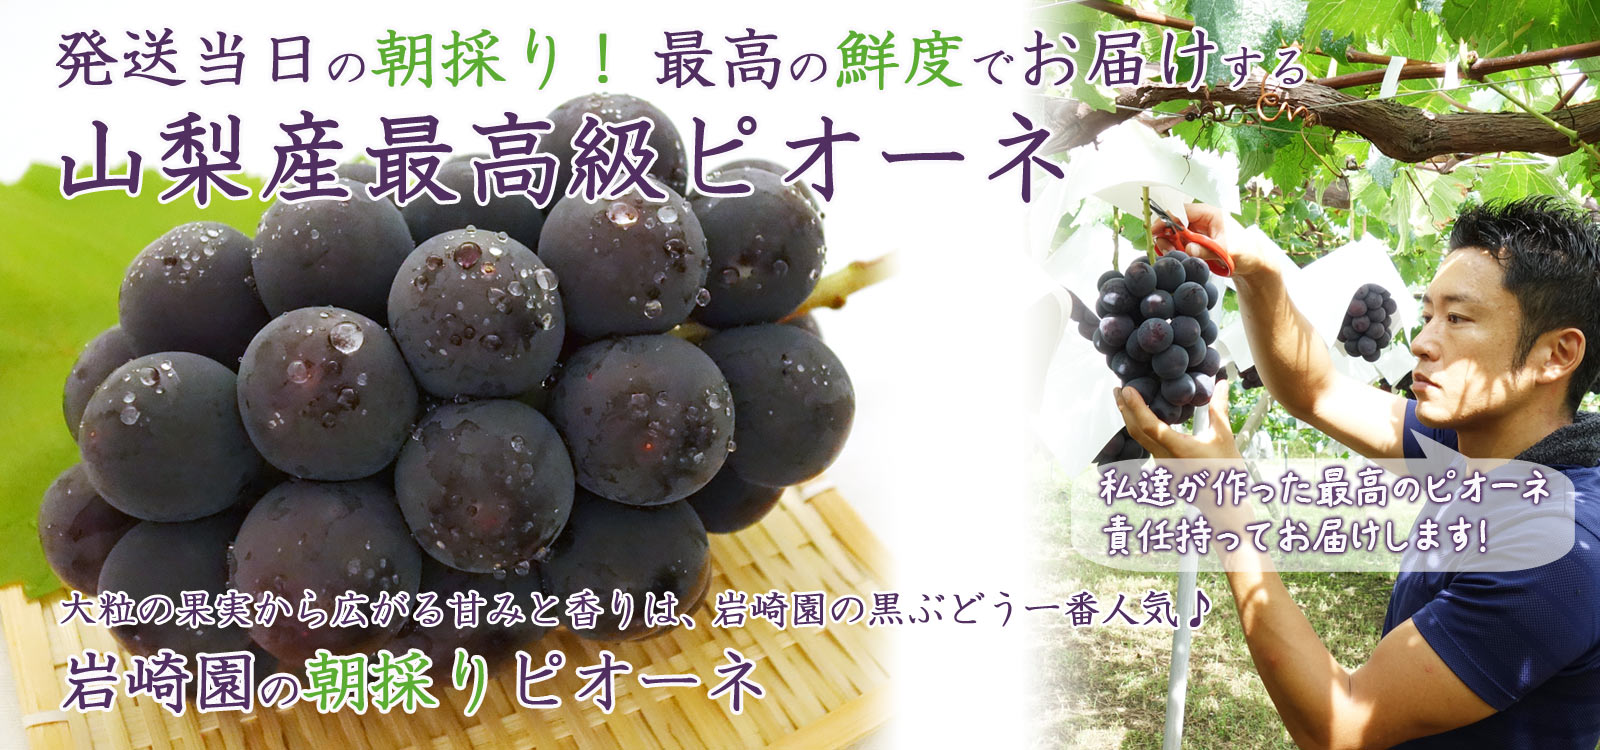 大粒の果実から広がる甘みと香りは、岩崎園の黒ぶどう１番人気♪岩崎園の朝採りピオーネ